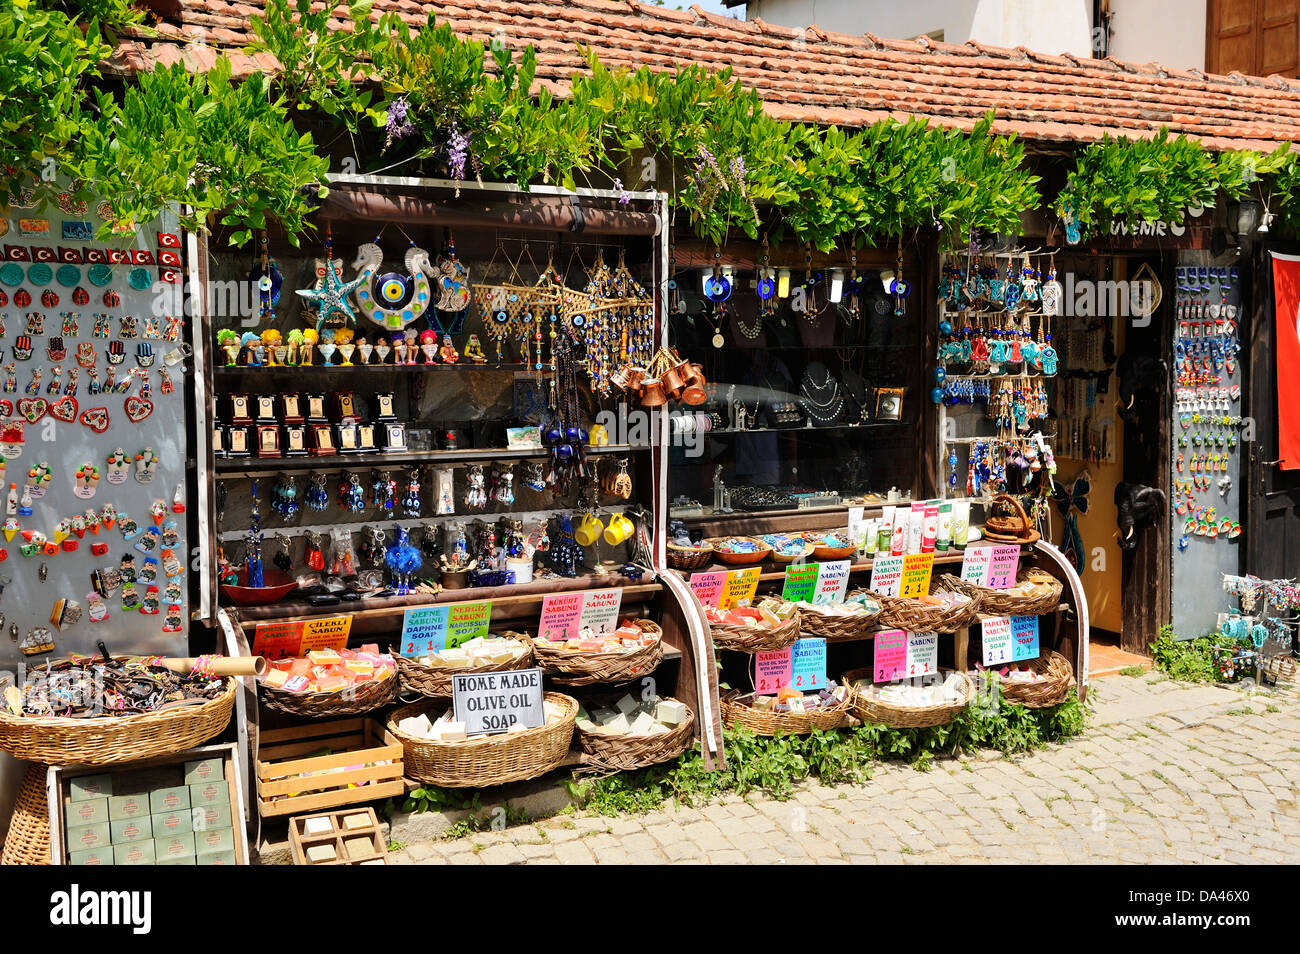 Boutiques pour touristes dans le vieux village de Sirince grec près de Selcuk, Turquie Banque D'Images